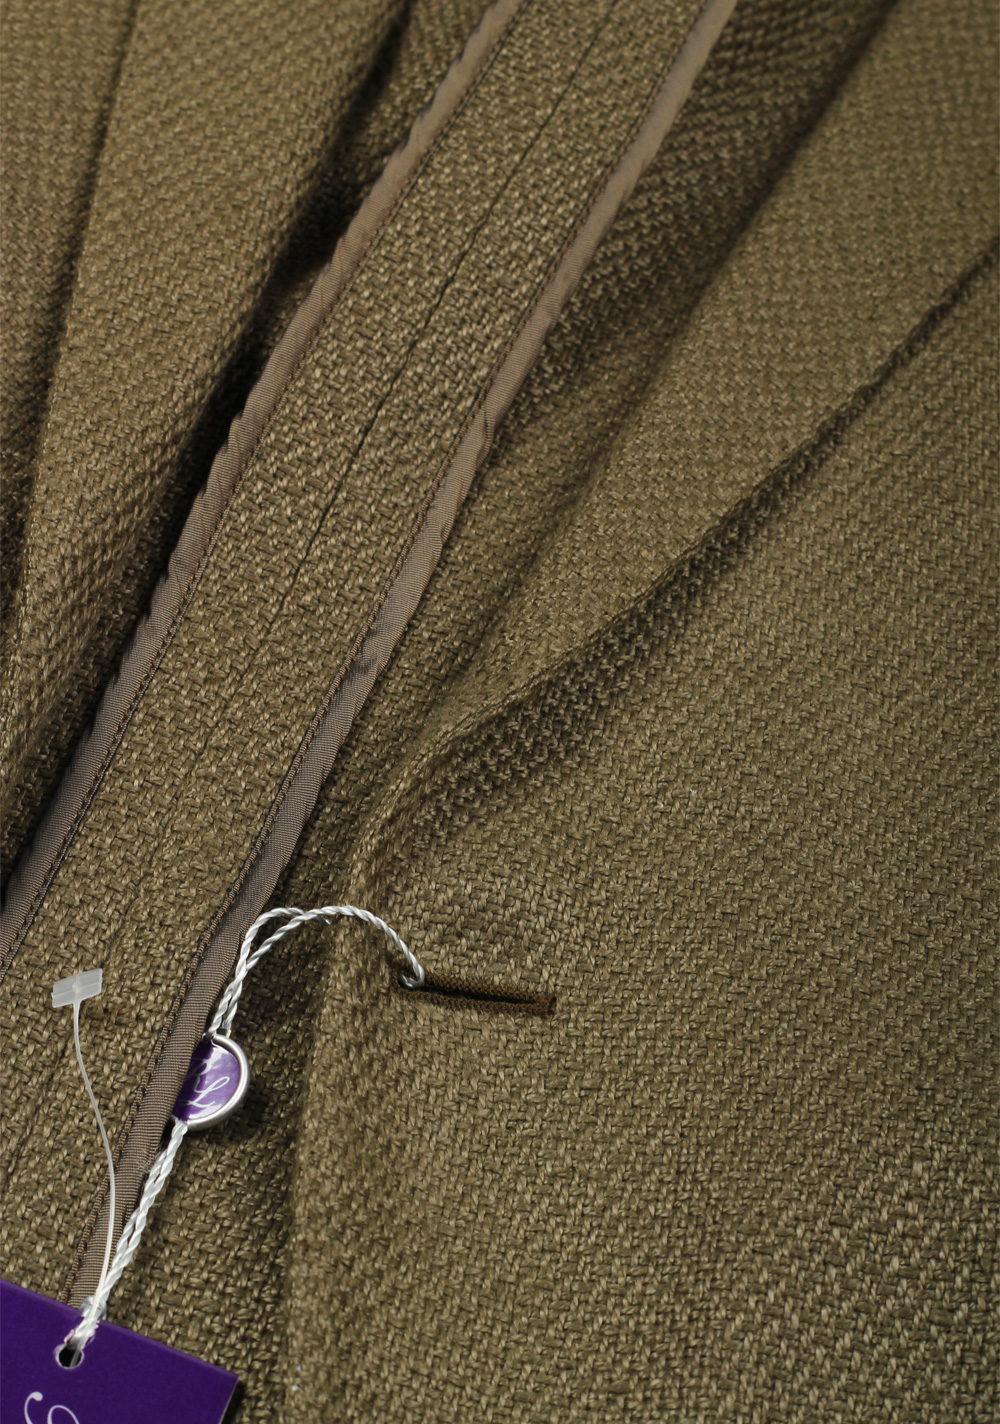 Ralph Lauren Purple Label Sport Coat Size 54 / 44R U.S. | Costume Limité